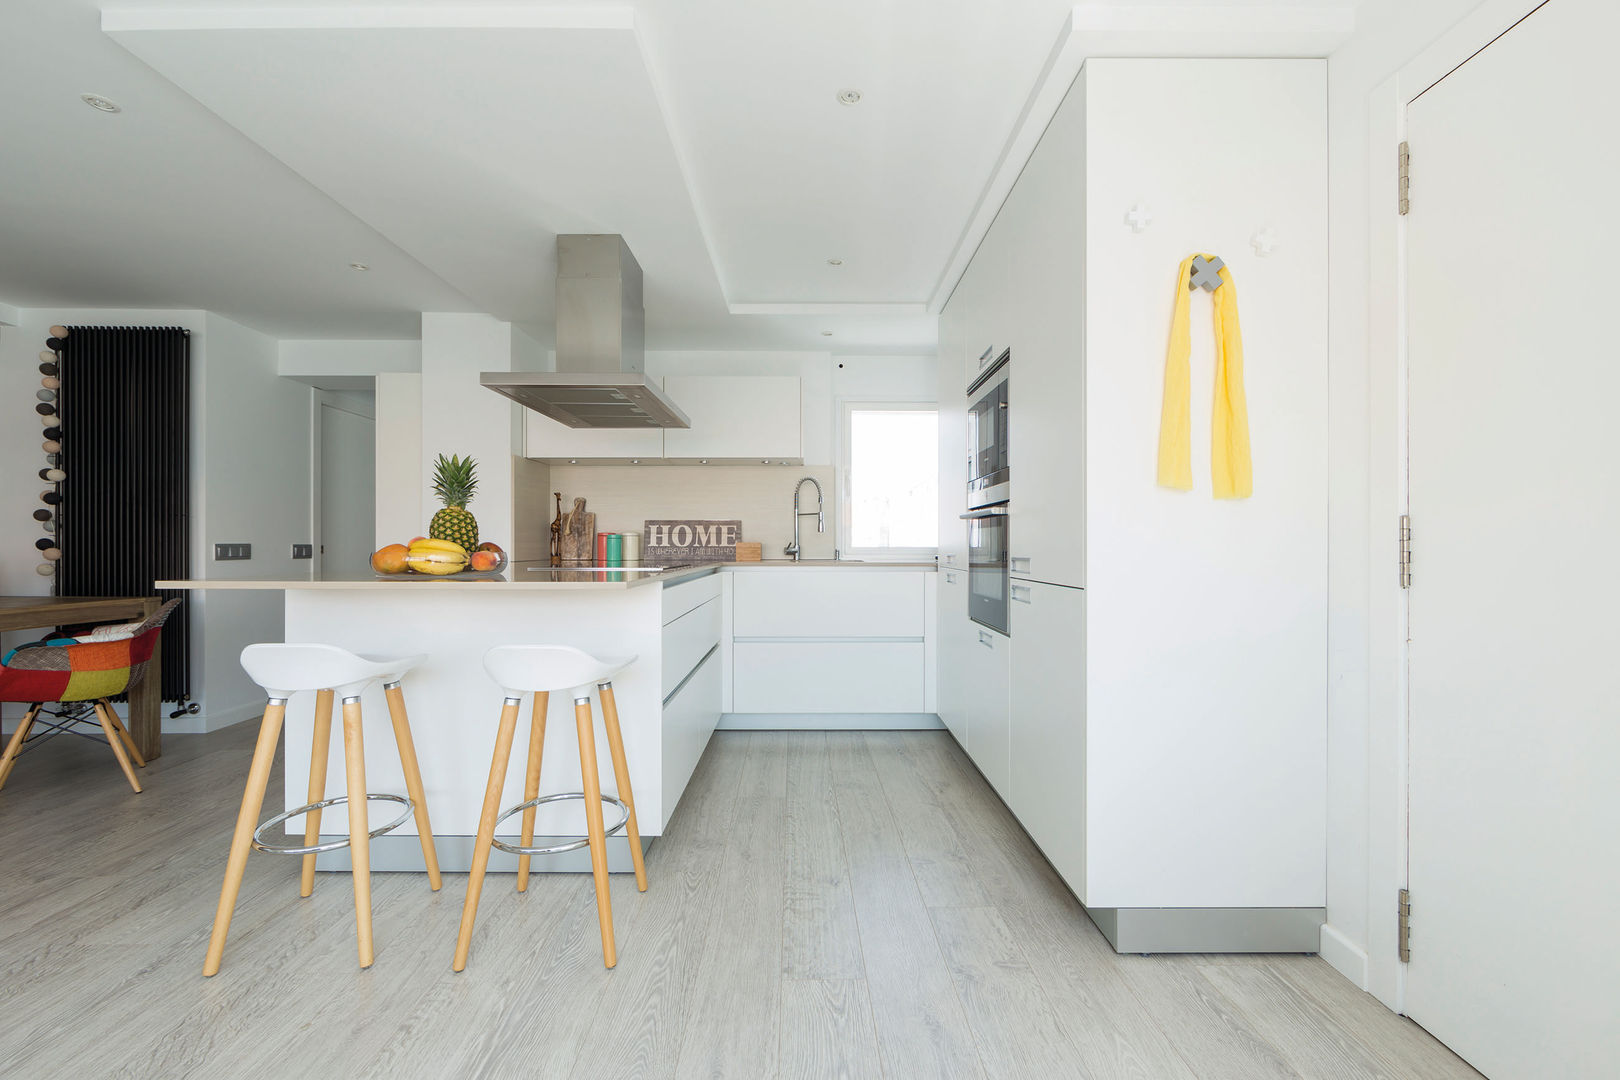 Una cocina blanca abierta al resto de la casa, Santiago Interiores - Cocinas Santos Santiago Interiores - Cocinas Santos 빌트인 주방